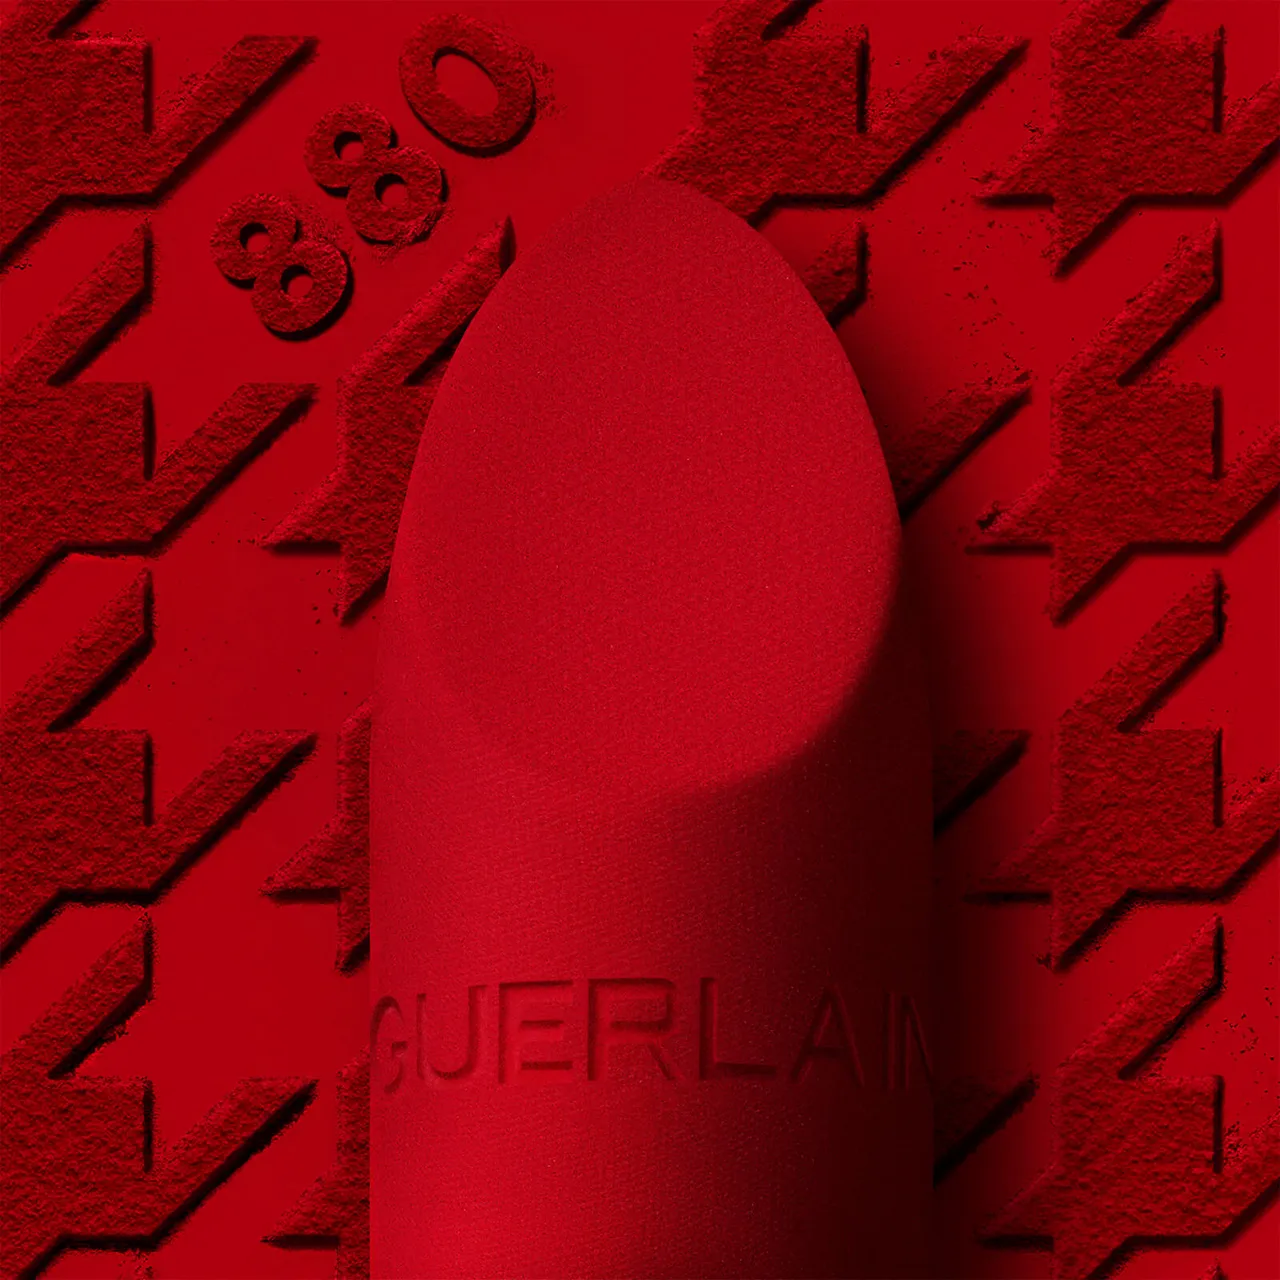 Guerlain Rouge G Luxurious Velvet 16 Hour Wear High-Pigmentation Velvet Matte Lipstick 3.5g (Various Shades) - 880 Ruby Red